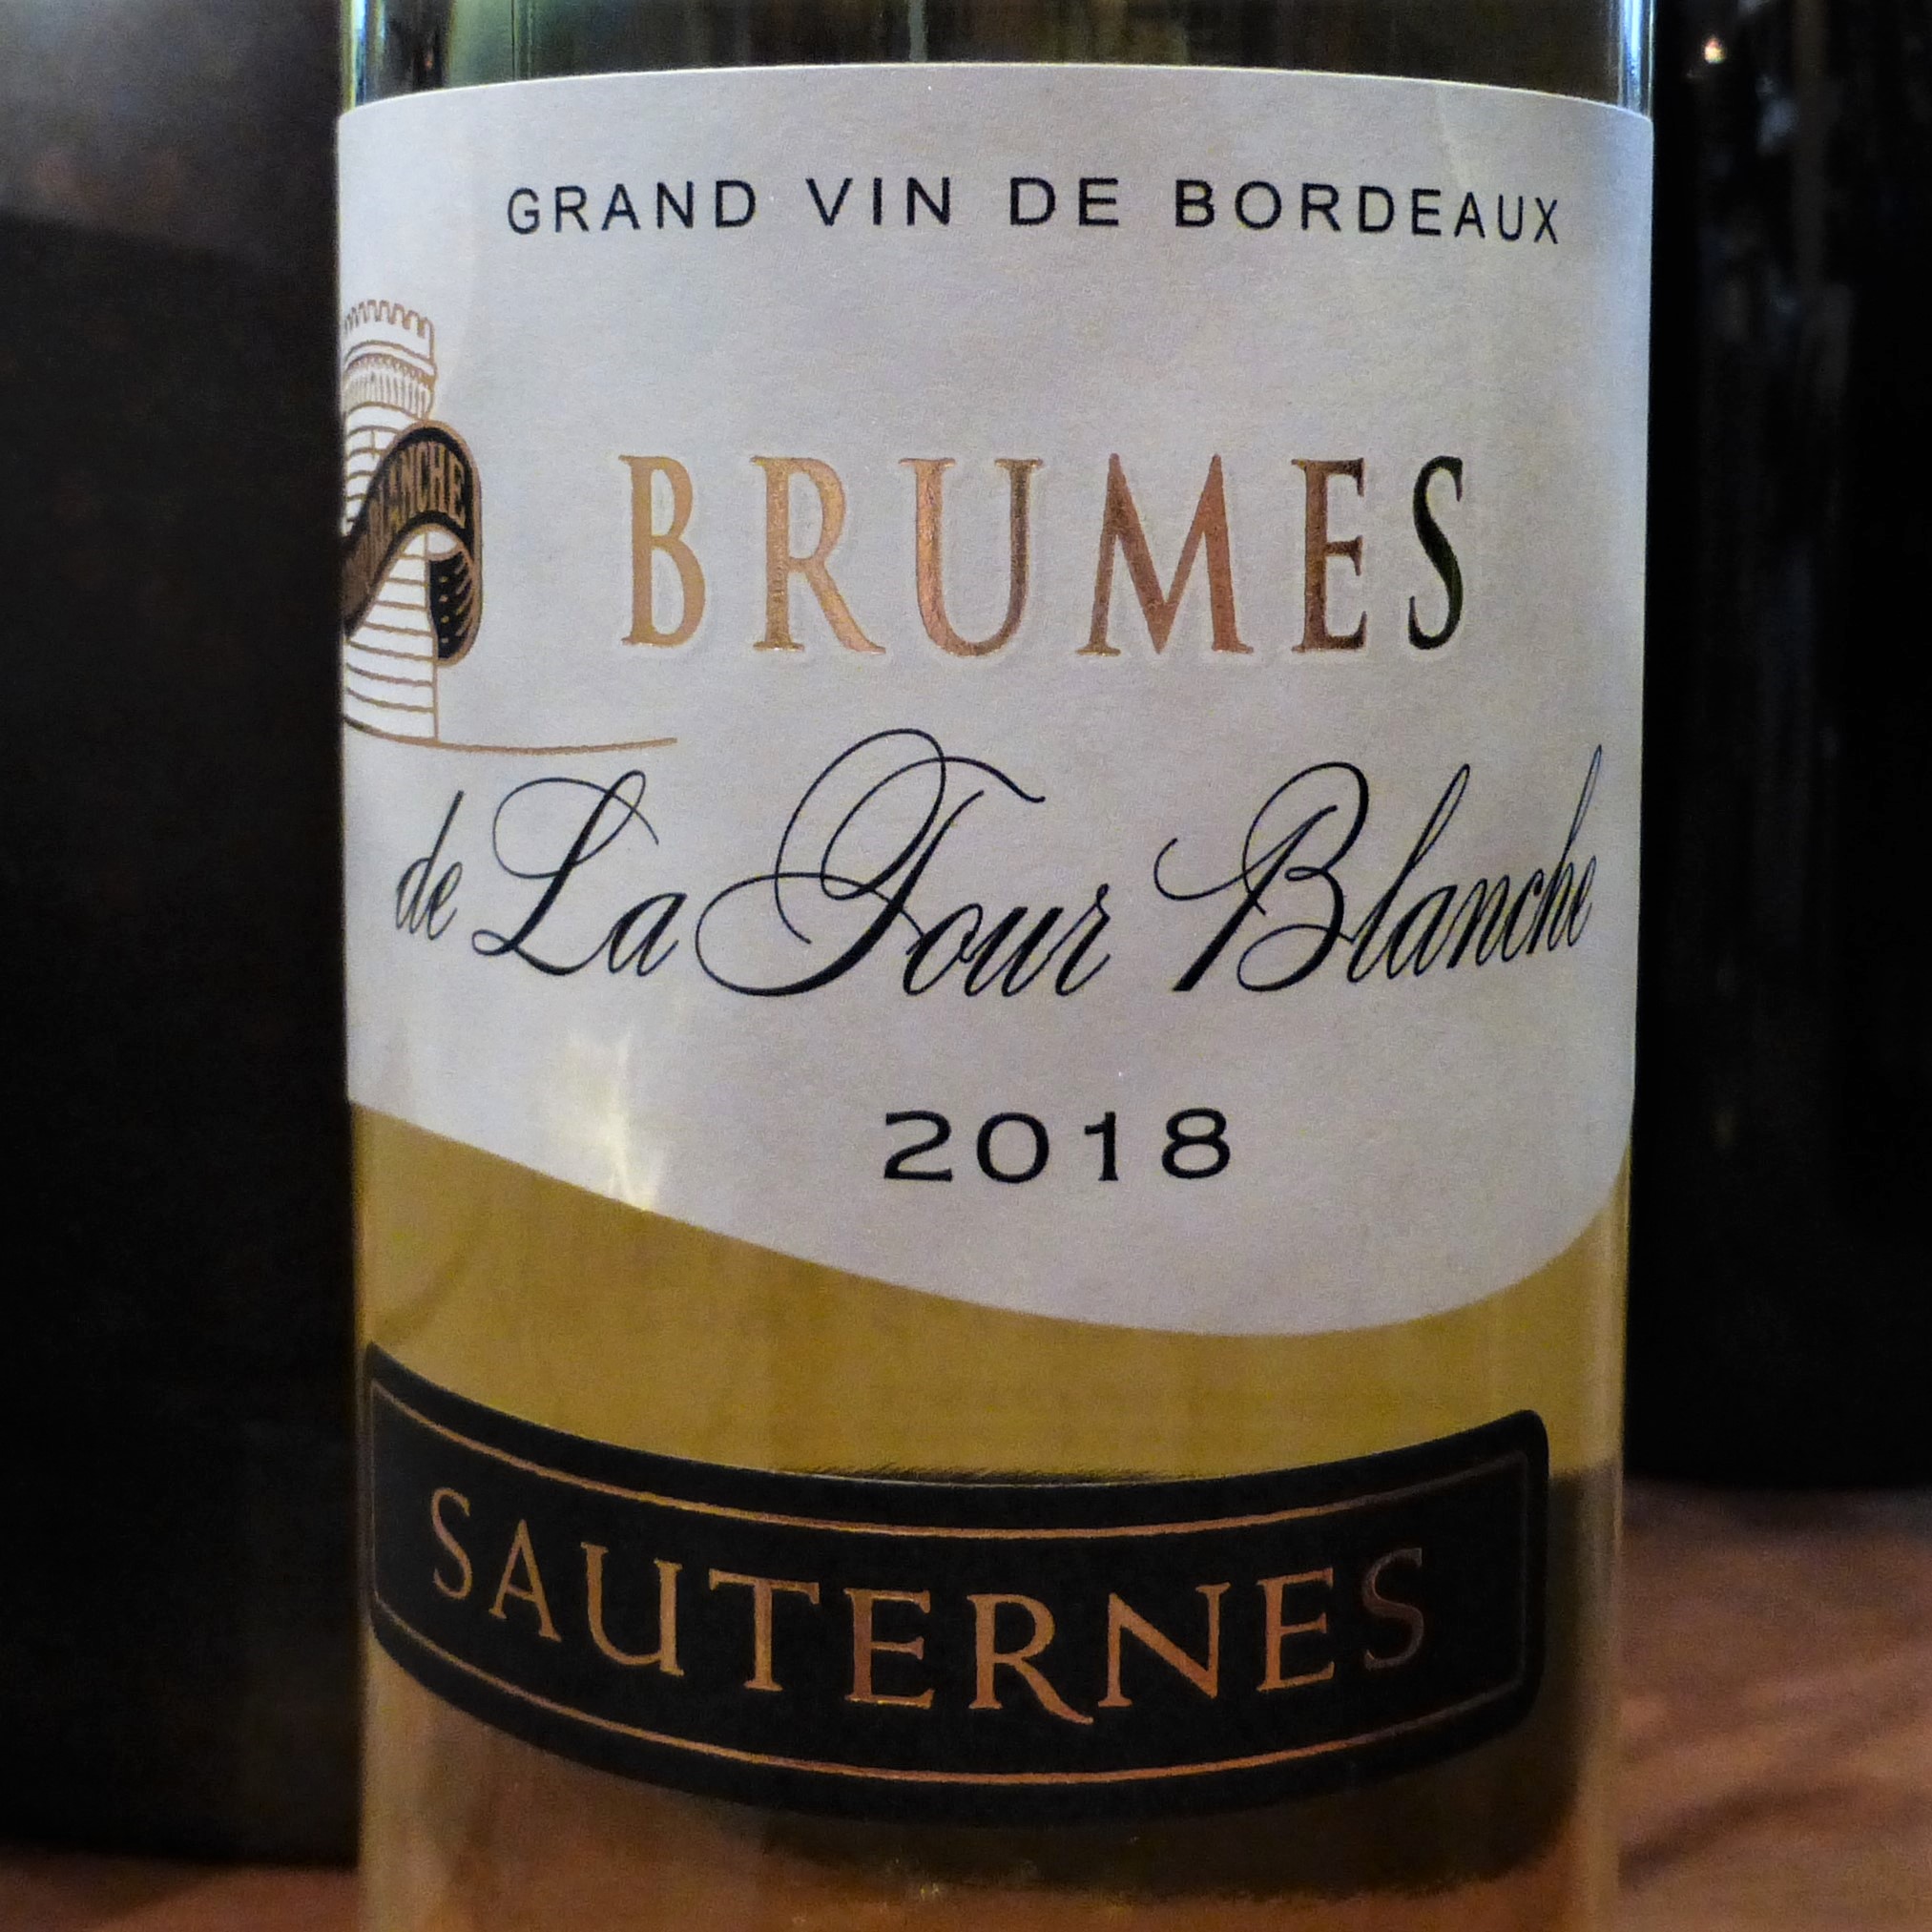 2018 Brumes de La Tour Blanche, Sauternes